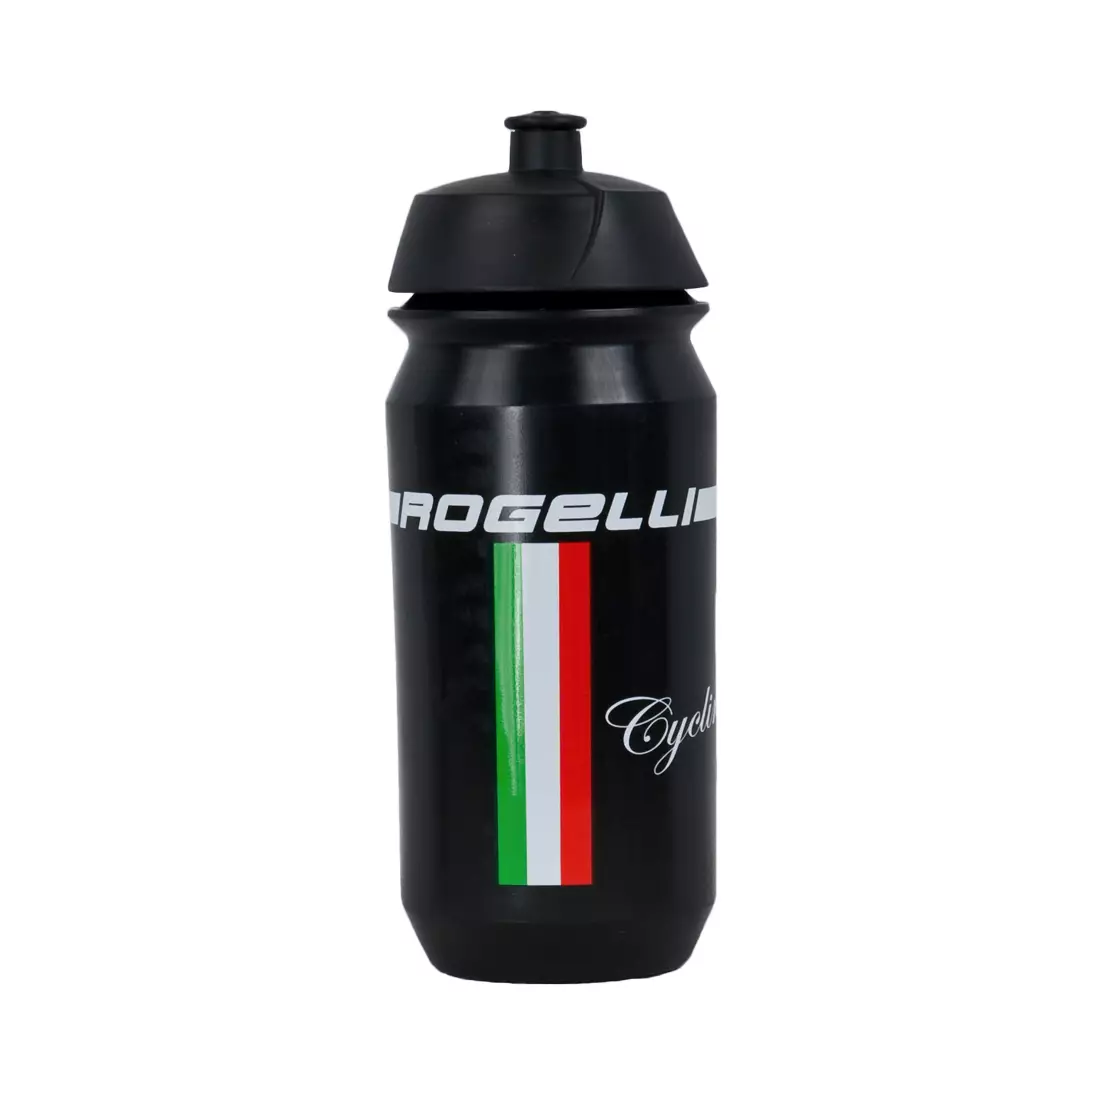 ROGELLI ss18 BIKE - TEAM - Fahrradwasserflasche, Farbe: Schwarz